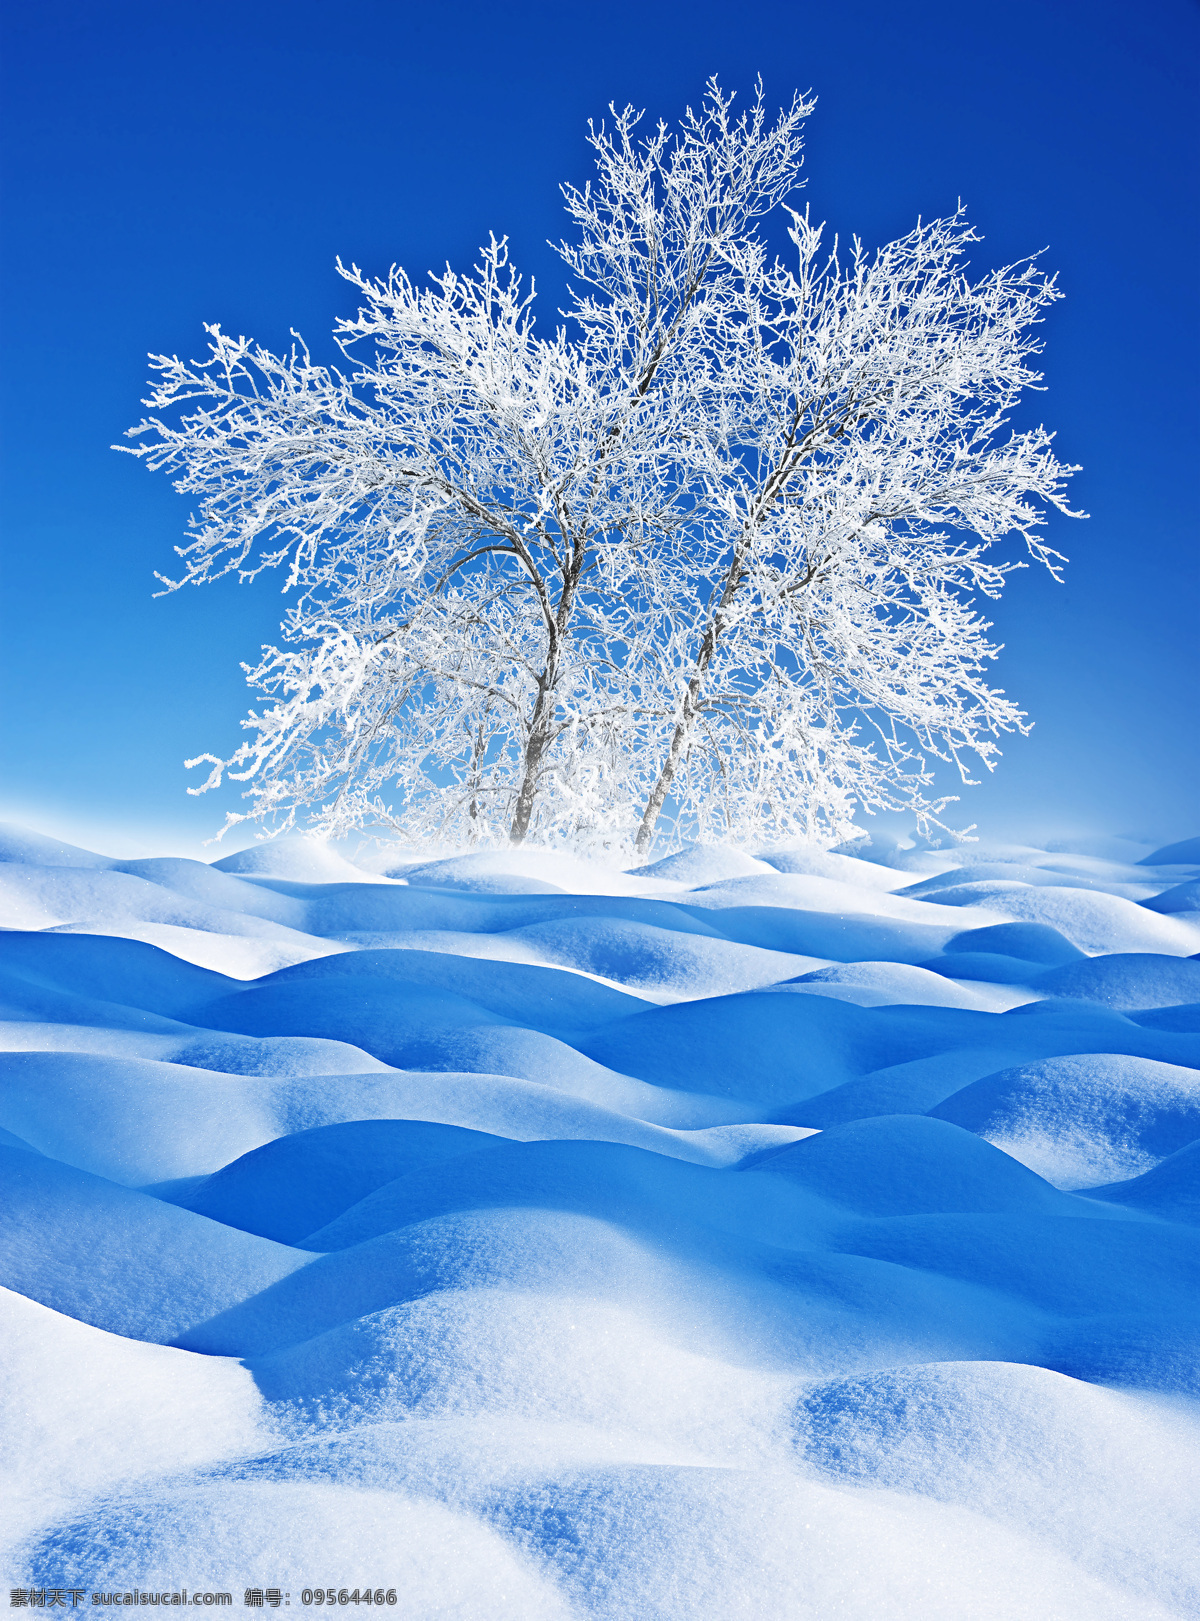 冬季 雪景 松树 枝雪 松冰柱 雪花 积雪 积雪背景 冬季风景 冬季美景 雪天 冬季雾凇 自然景观 自然风景